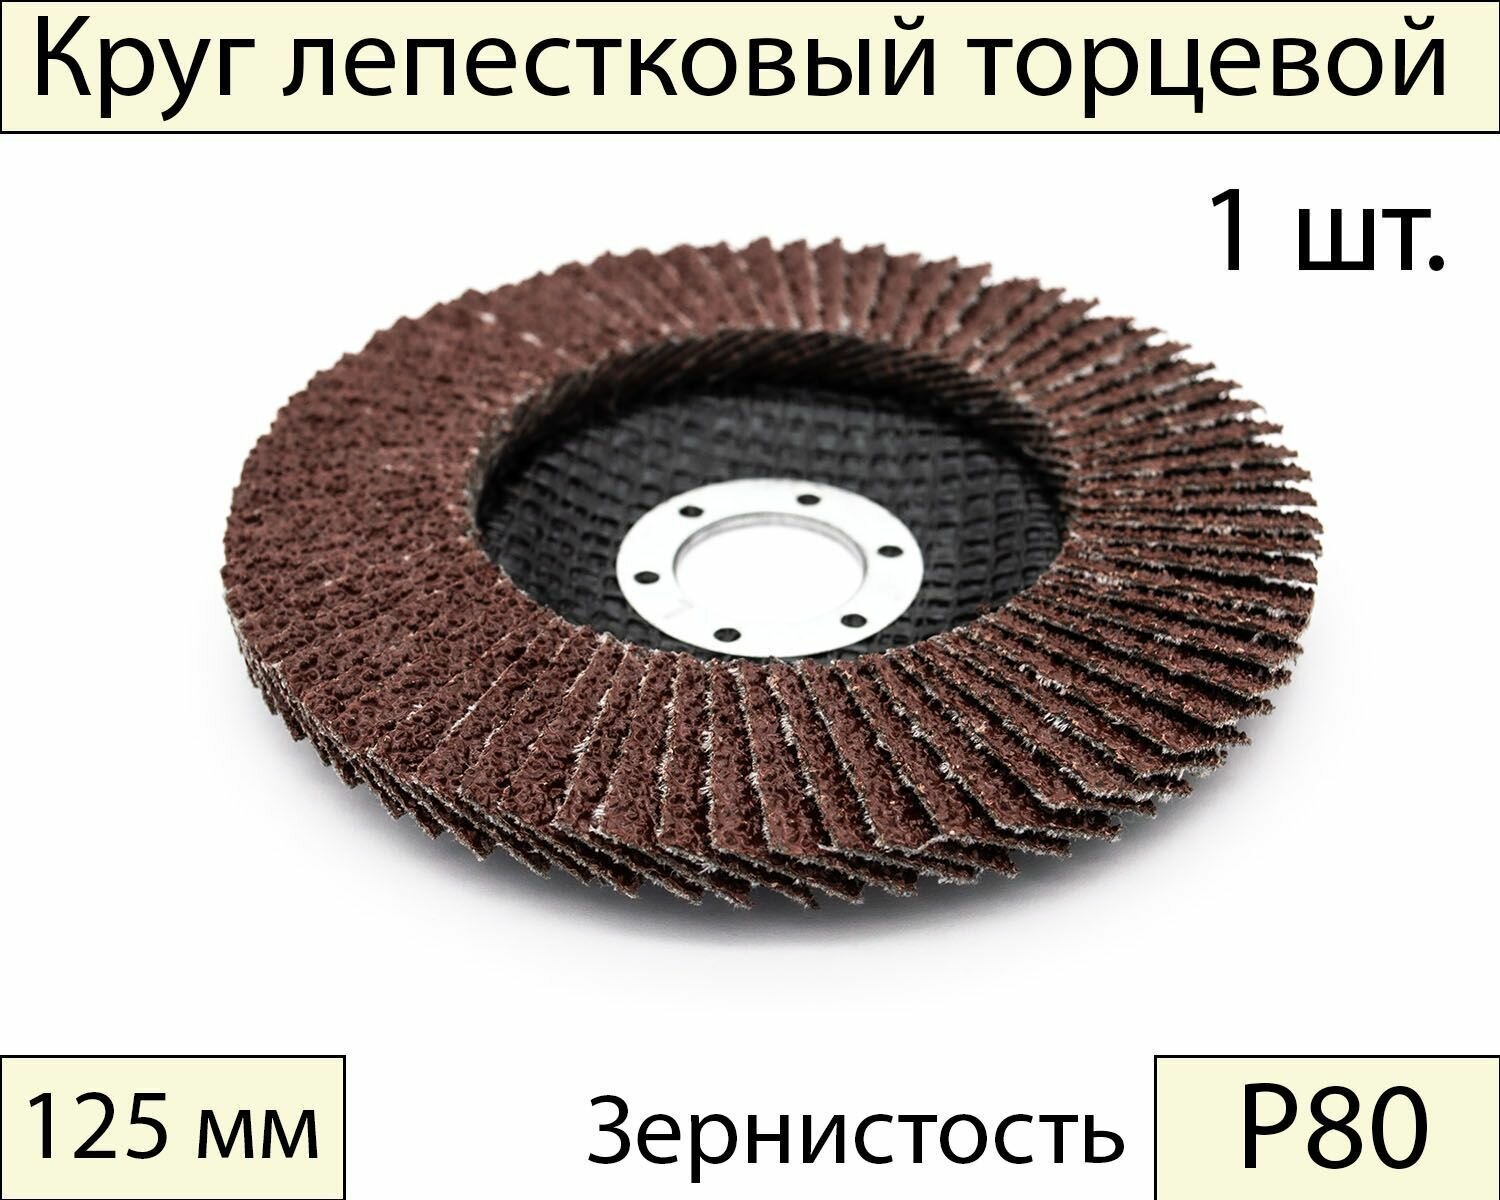 Круги шлифовальные абразивные / лепестковый торцевой диск 125 мм, Р80, 1 шт.